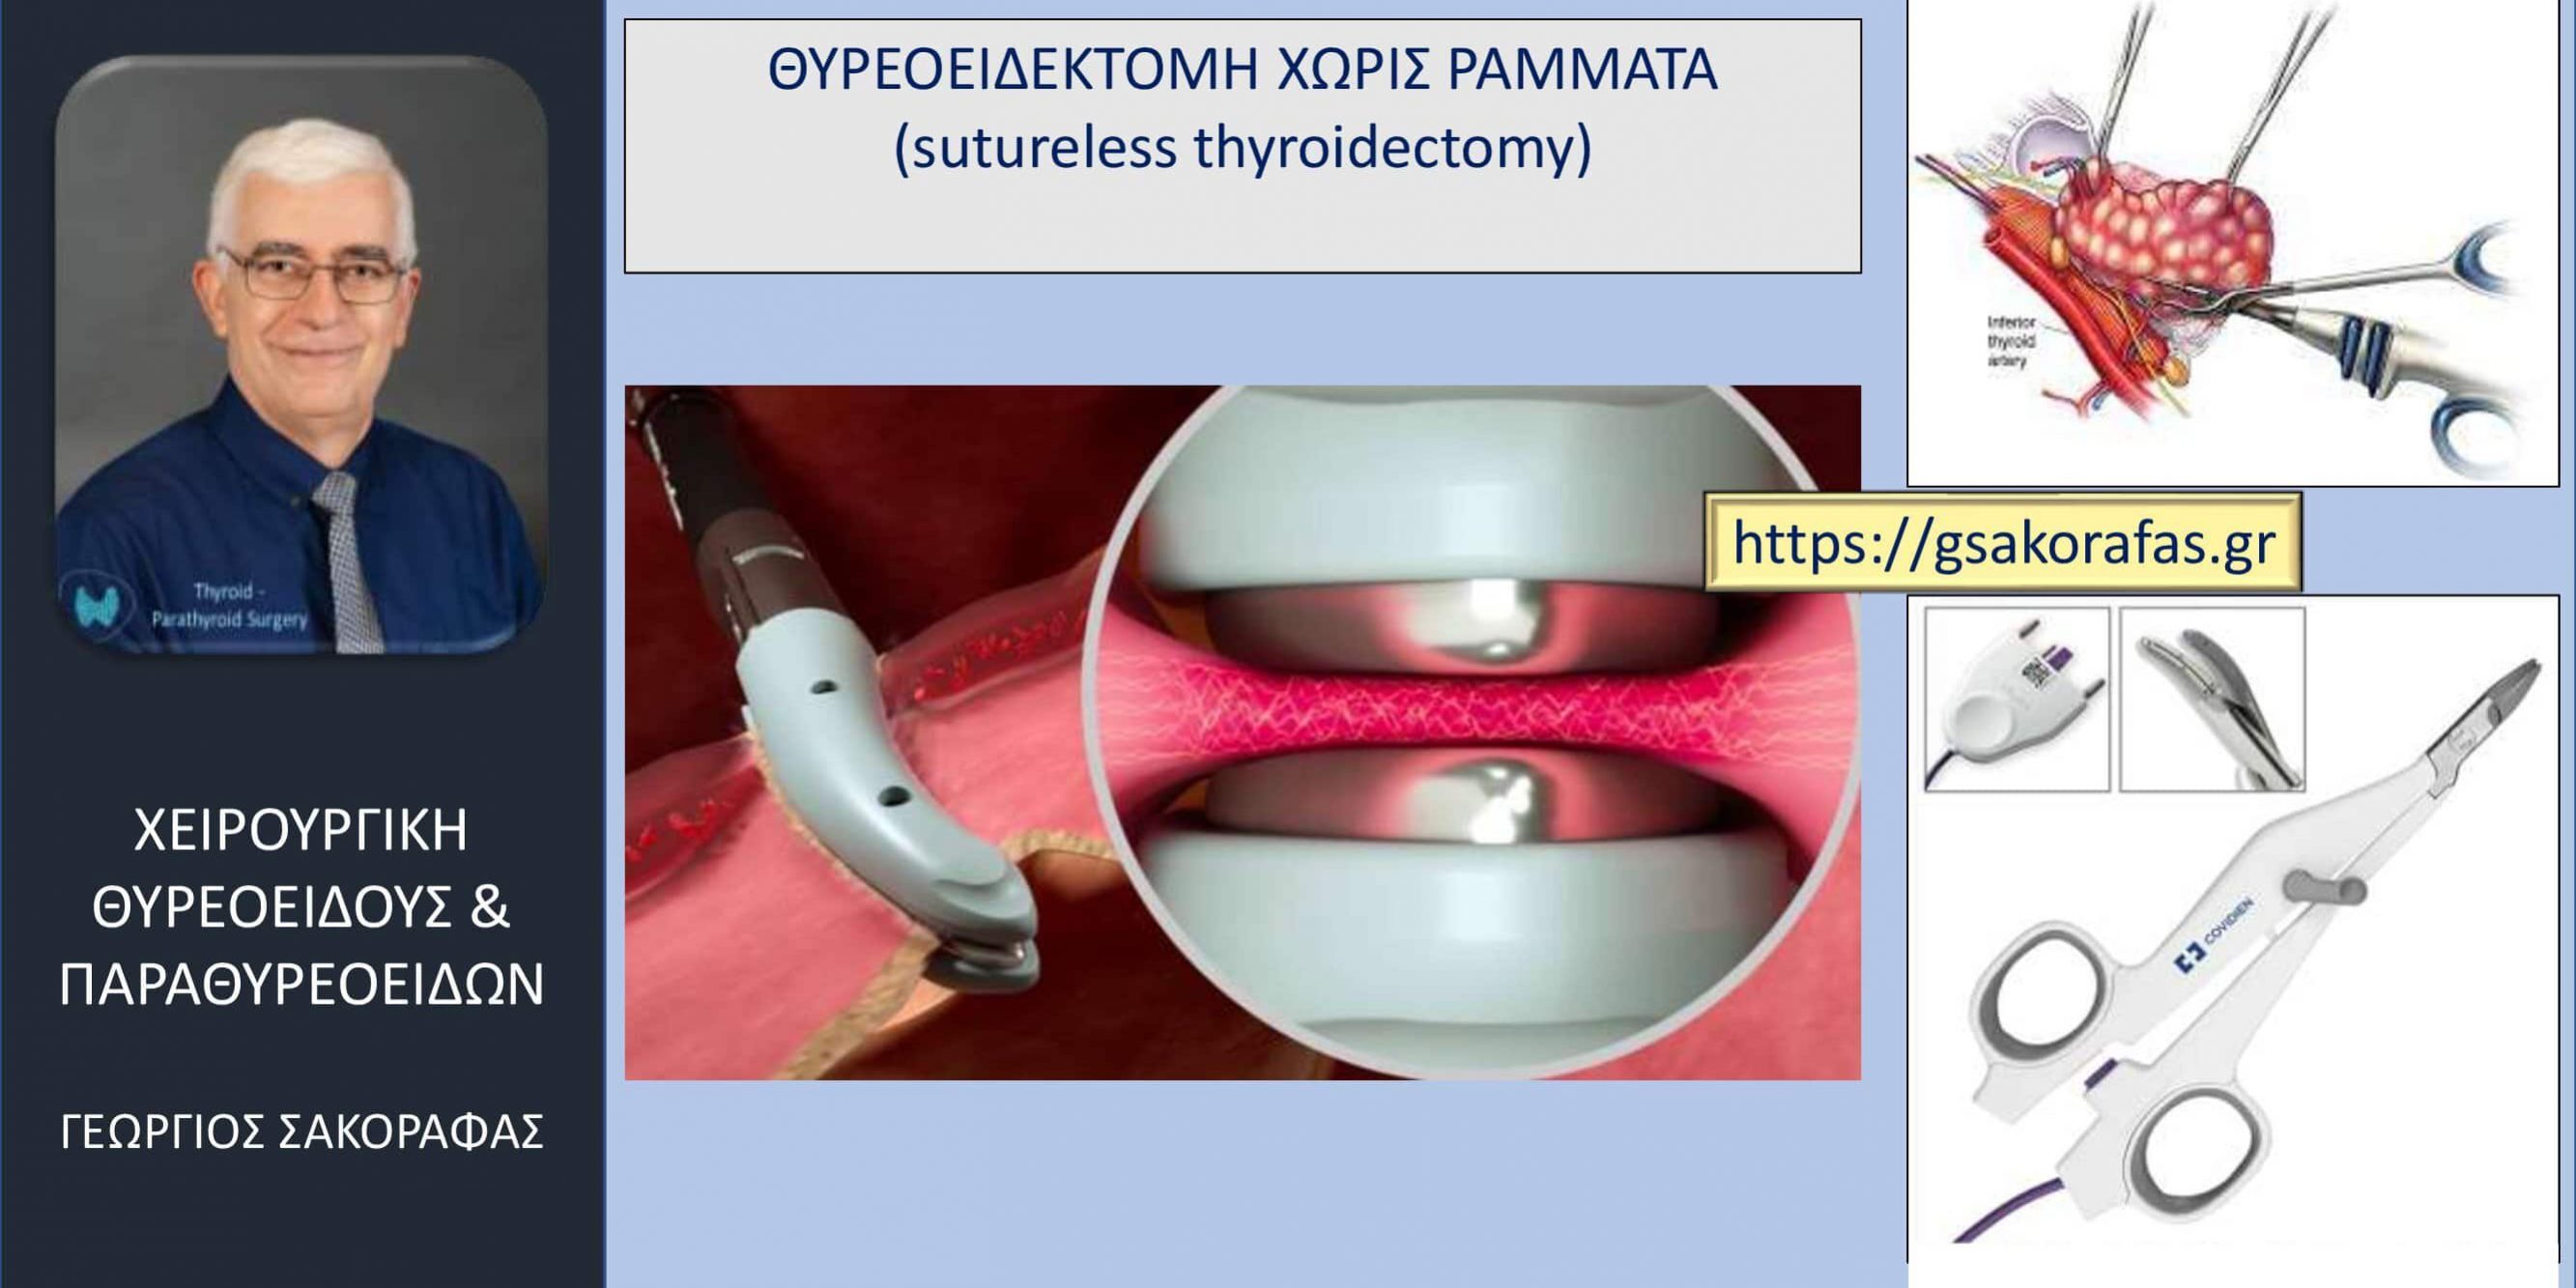 Χωρίς ράμματα θυρεοειδεκτομή (suture-less thyroidectomy)- σημαντικά μειωμένος μετεγχειρητικός πόνος (και κάποια άλλα πλεονεκτήματα)